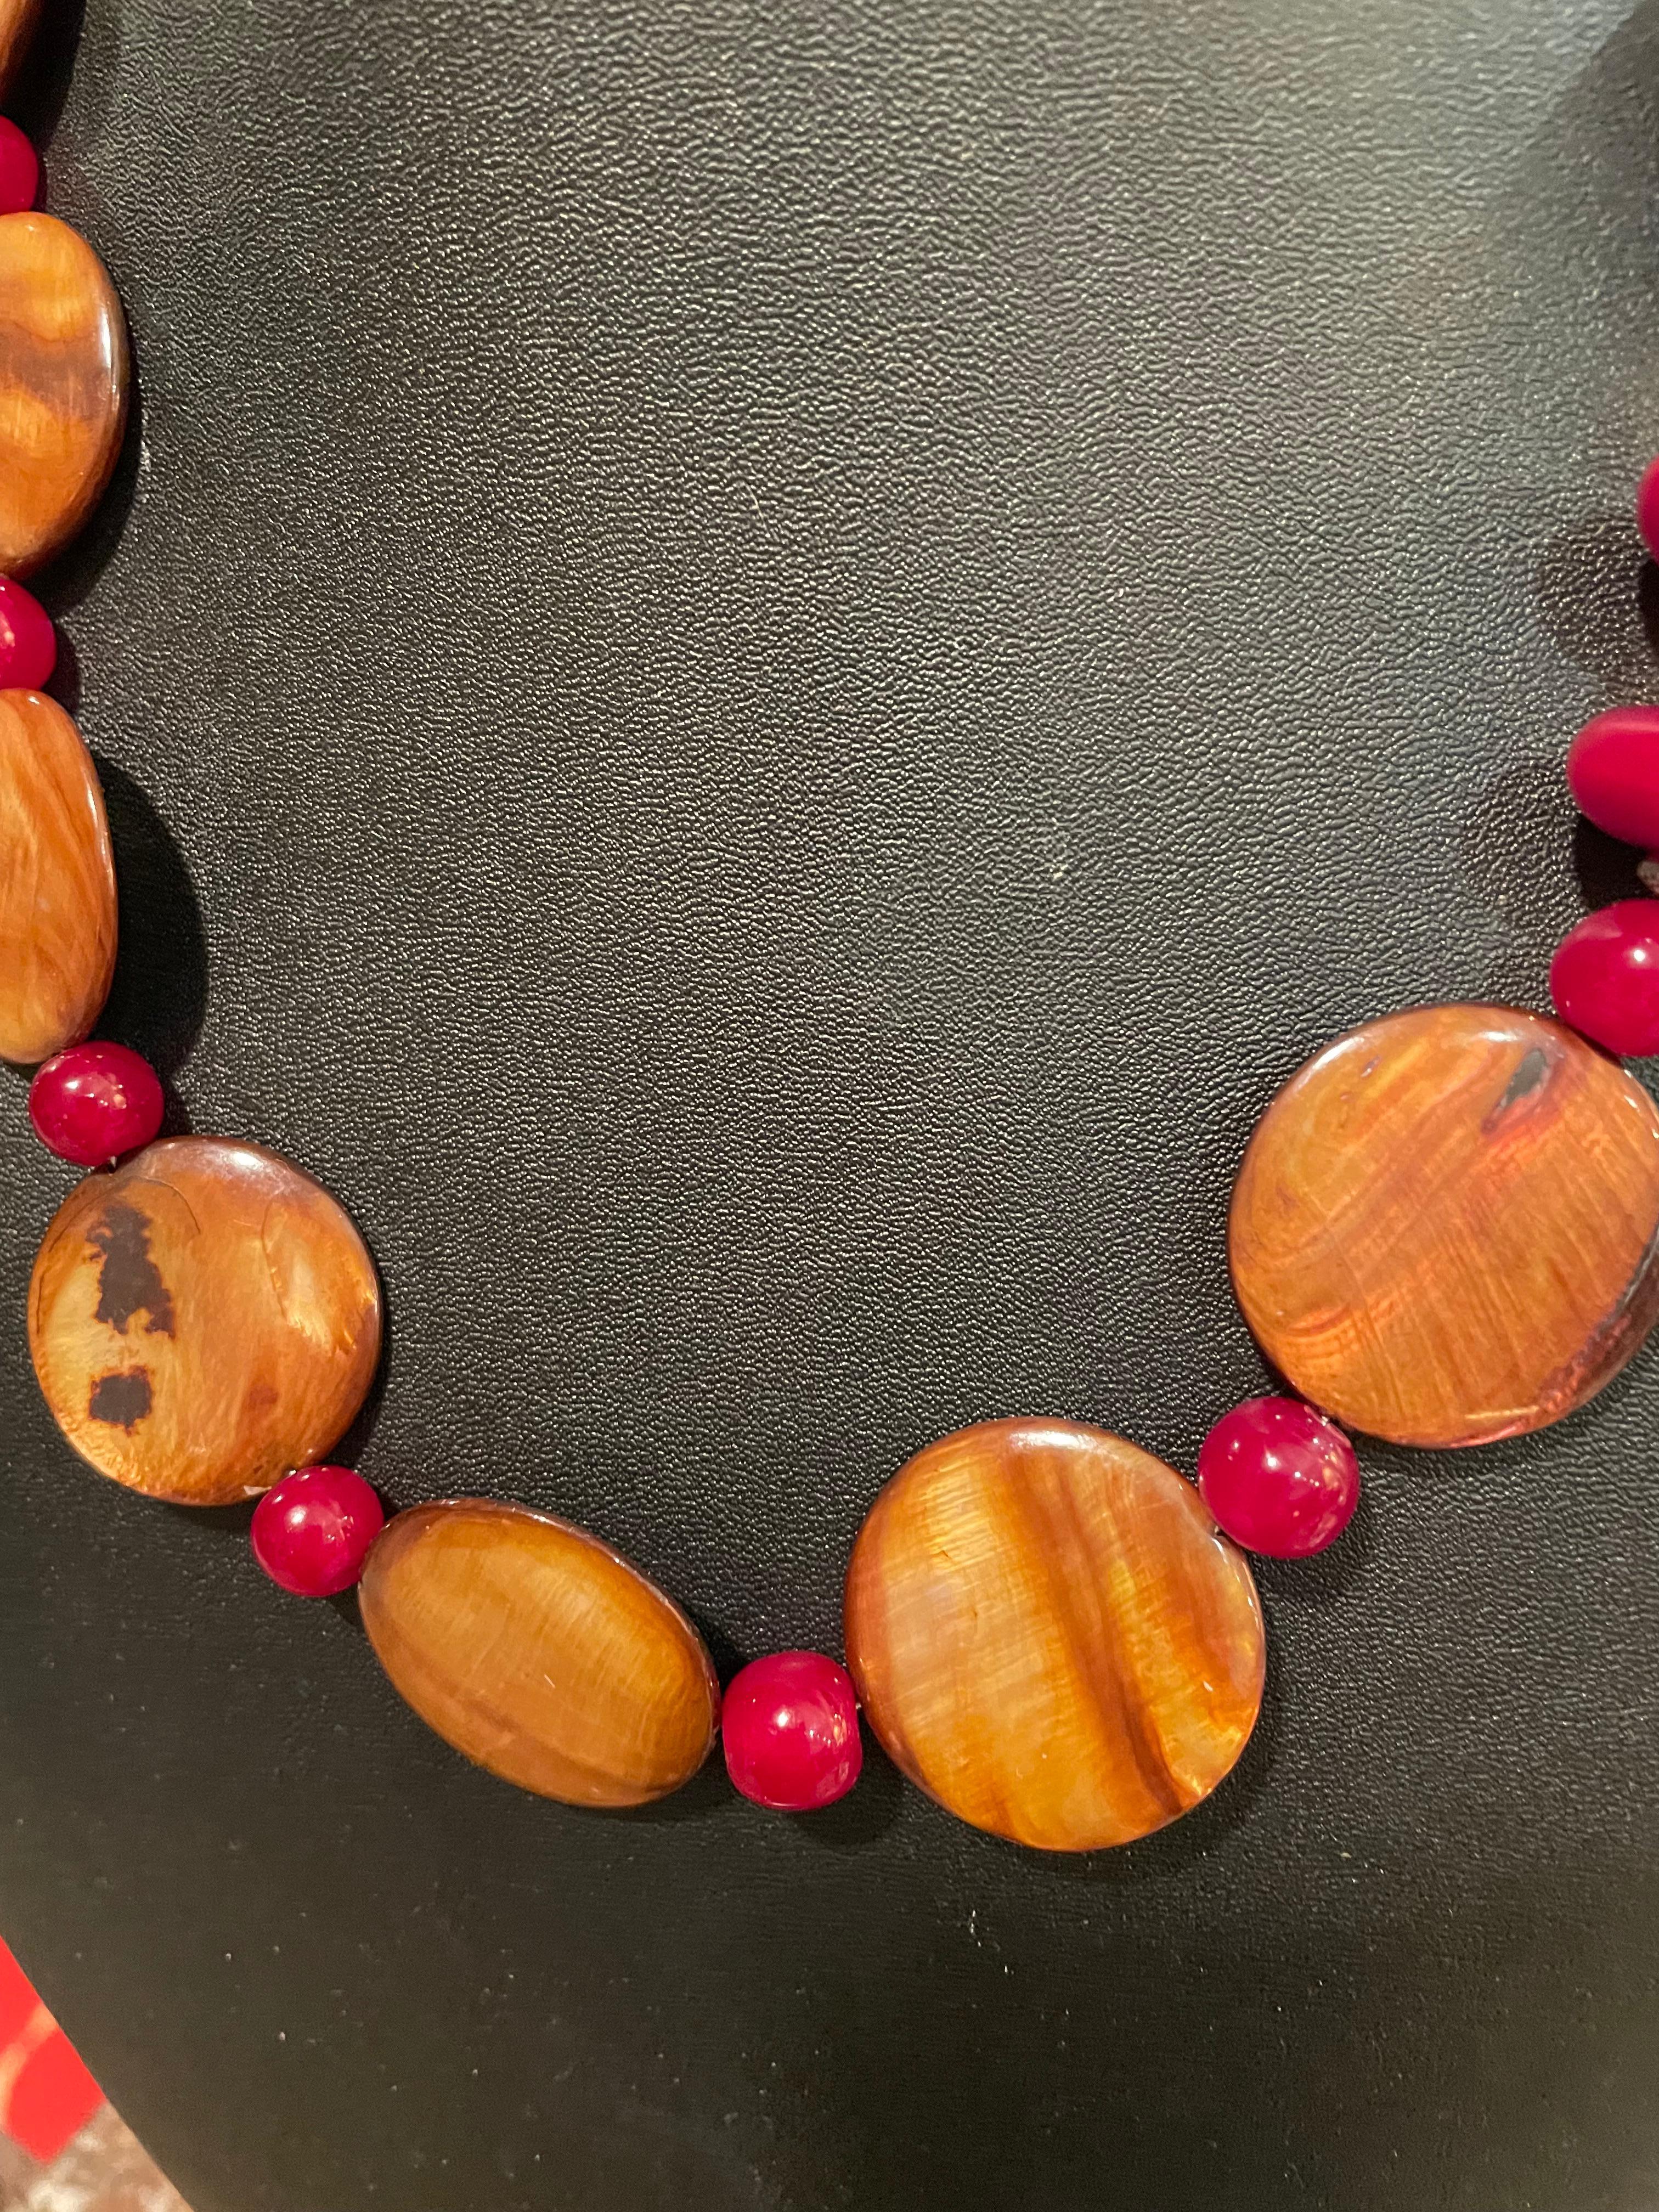 Lorraine's Bijoux bietet eine handgefertigte, einzigartige Halskette aus indischem Harz und Muscheln an. Die Farben des burgunderroten Harzes und der goldenen Muschel sind reichhaltig und schmeicheln jedem Teint. Dieses Stück hat eine wunderbare